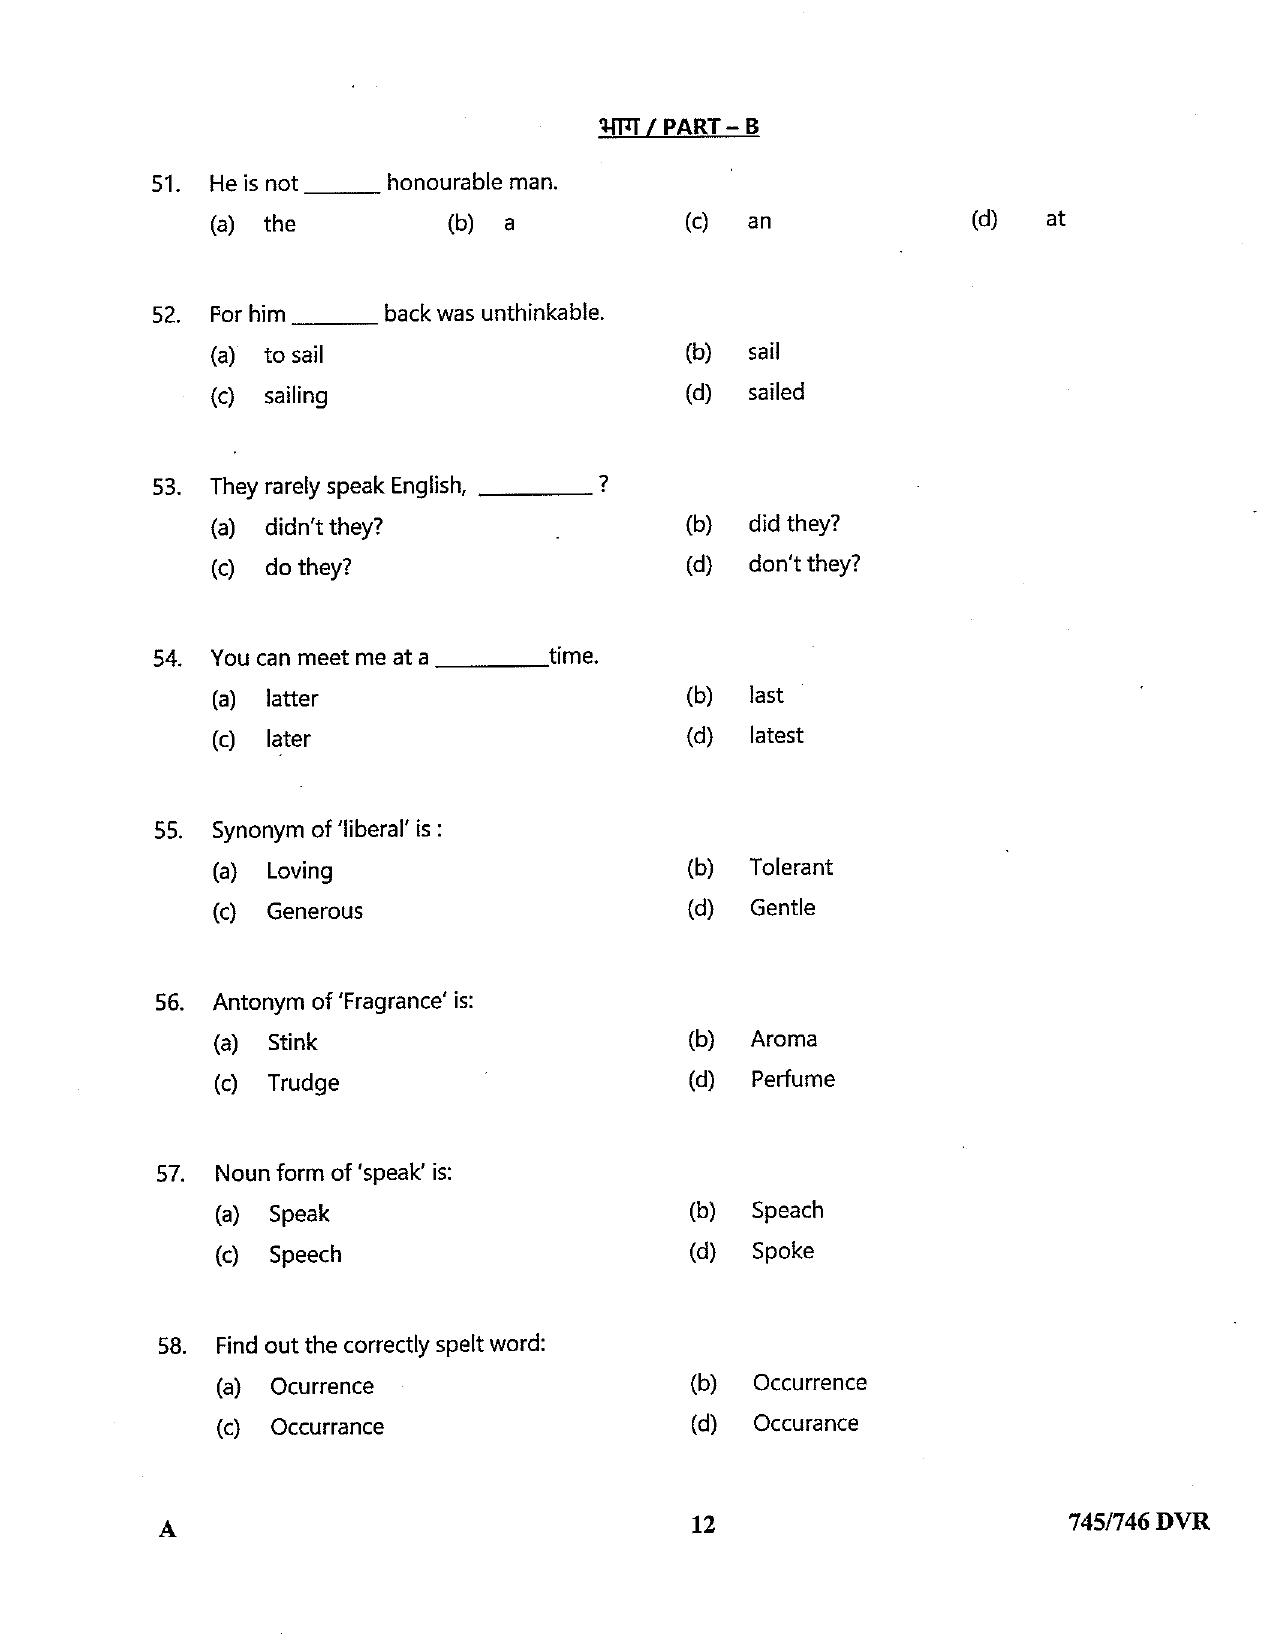 LPSC Driver (LVD/HVD) 2022 Question Paper - Page 12